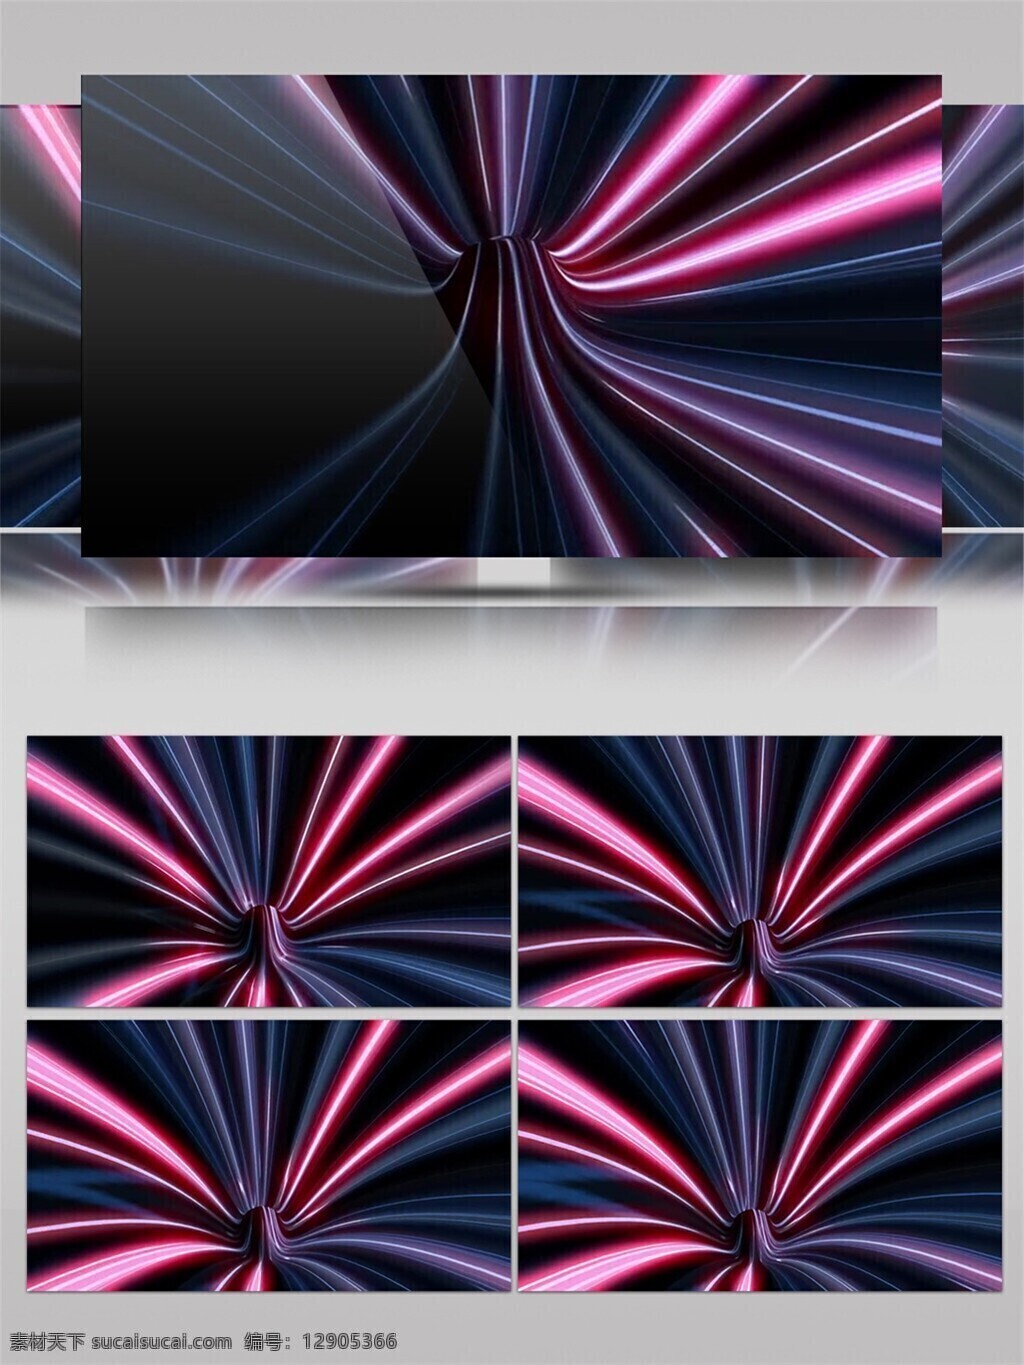 紫色 樱花 光束 视频 星际 激光 视觉享受 手机壁纸 光斑散射